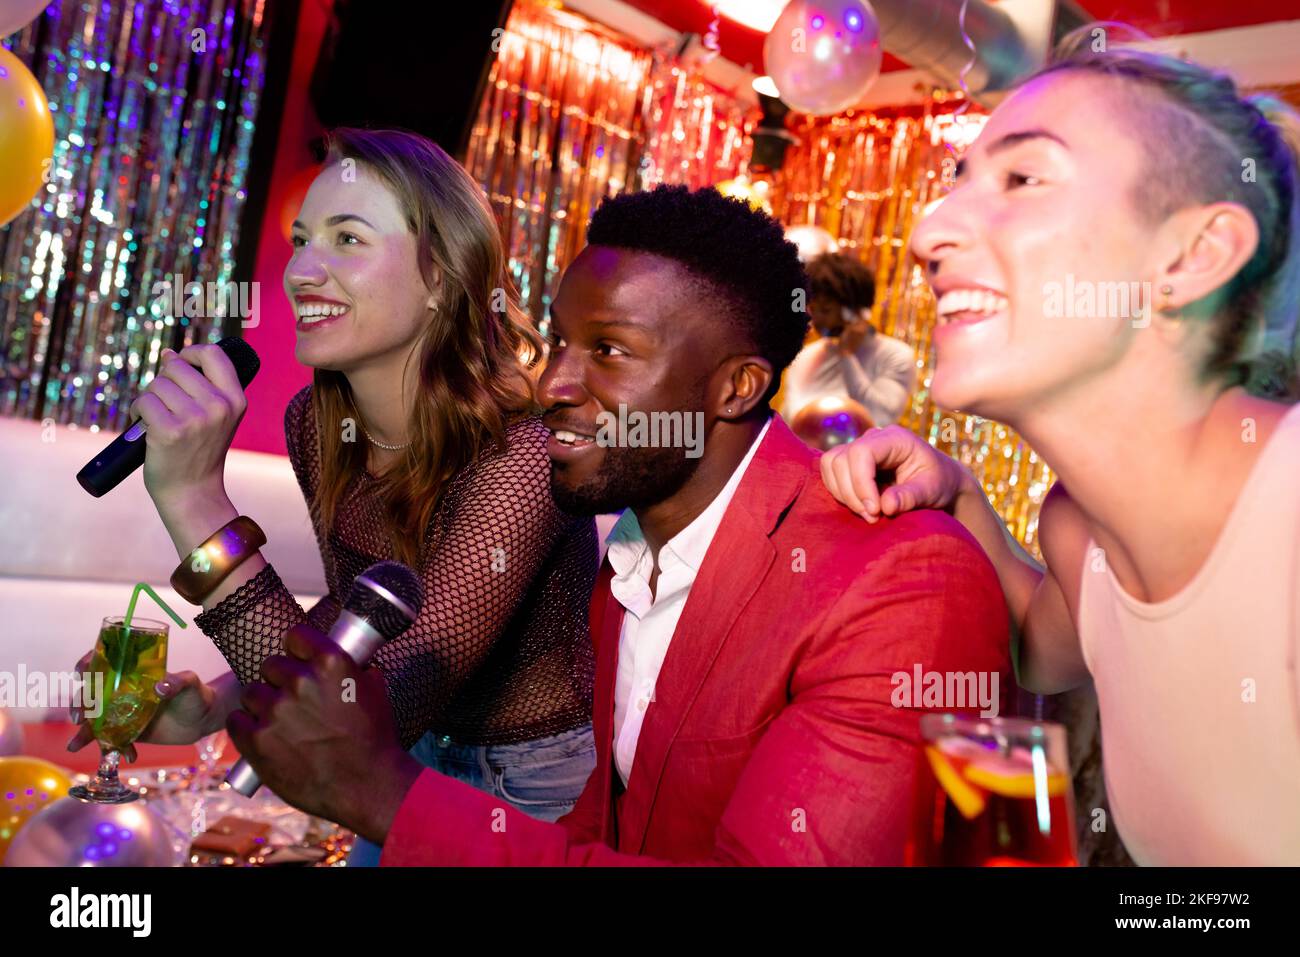 Trois amis masculins et féminins se sont amusés à chanter du karaoké et à boire dans un bar de discothèque Banque D'Images